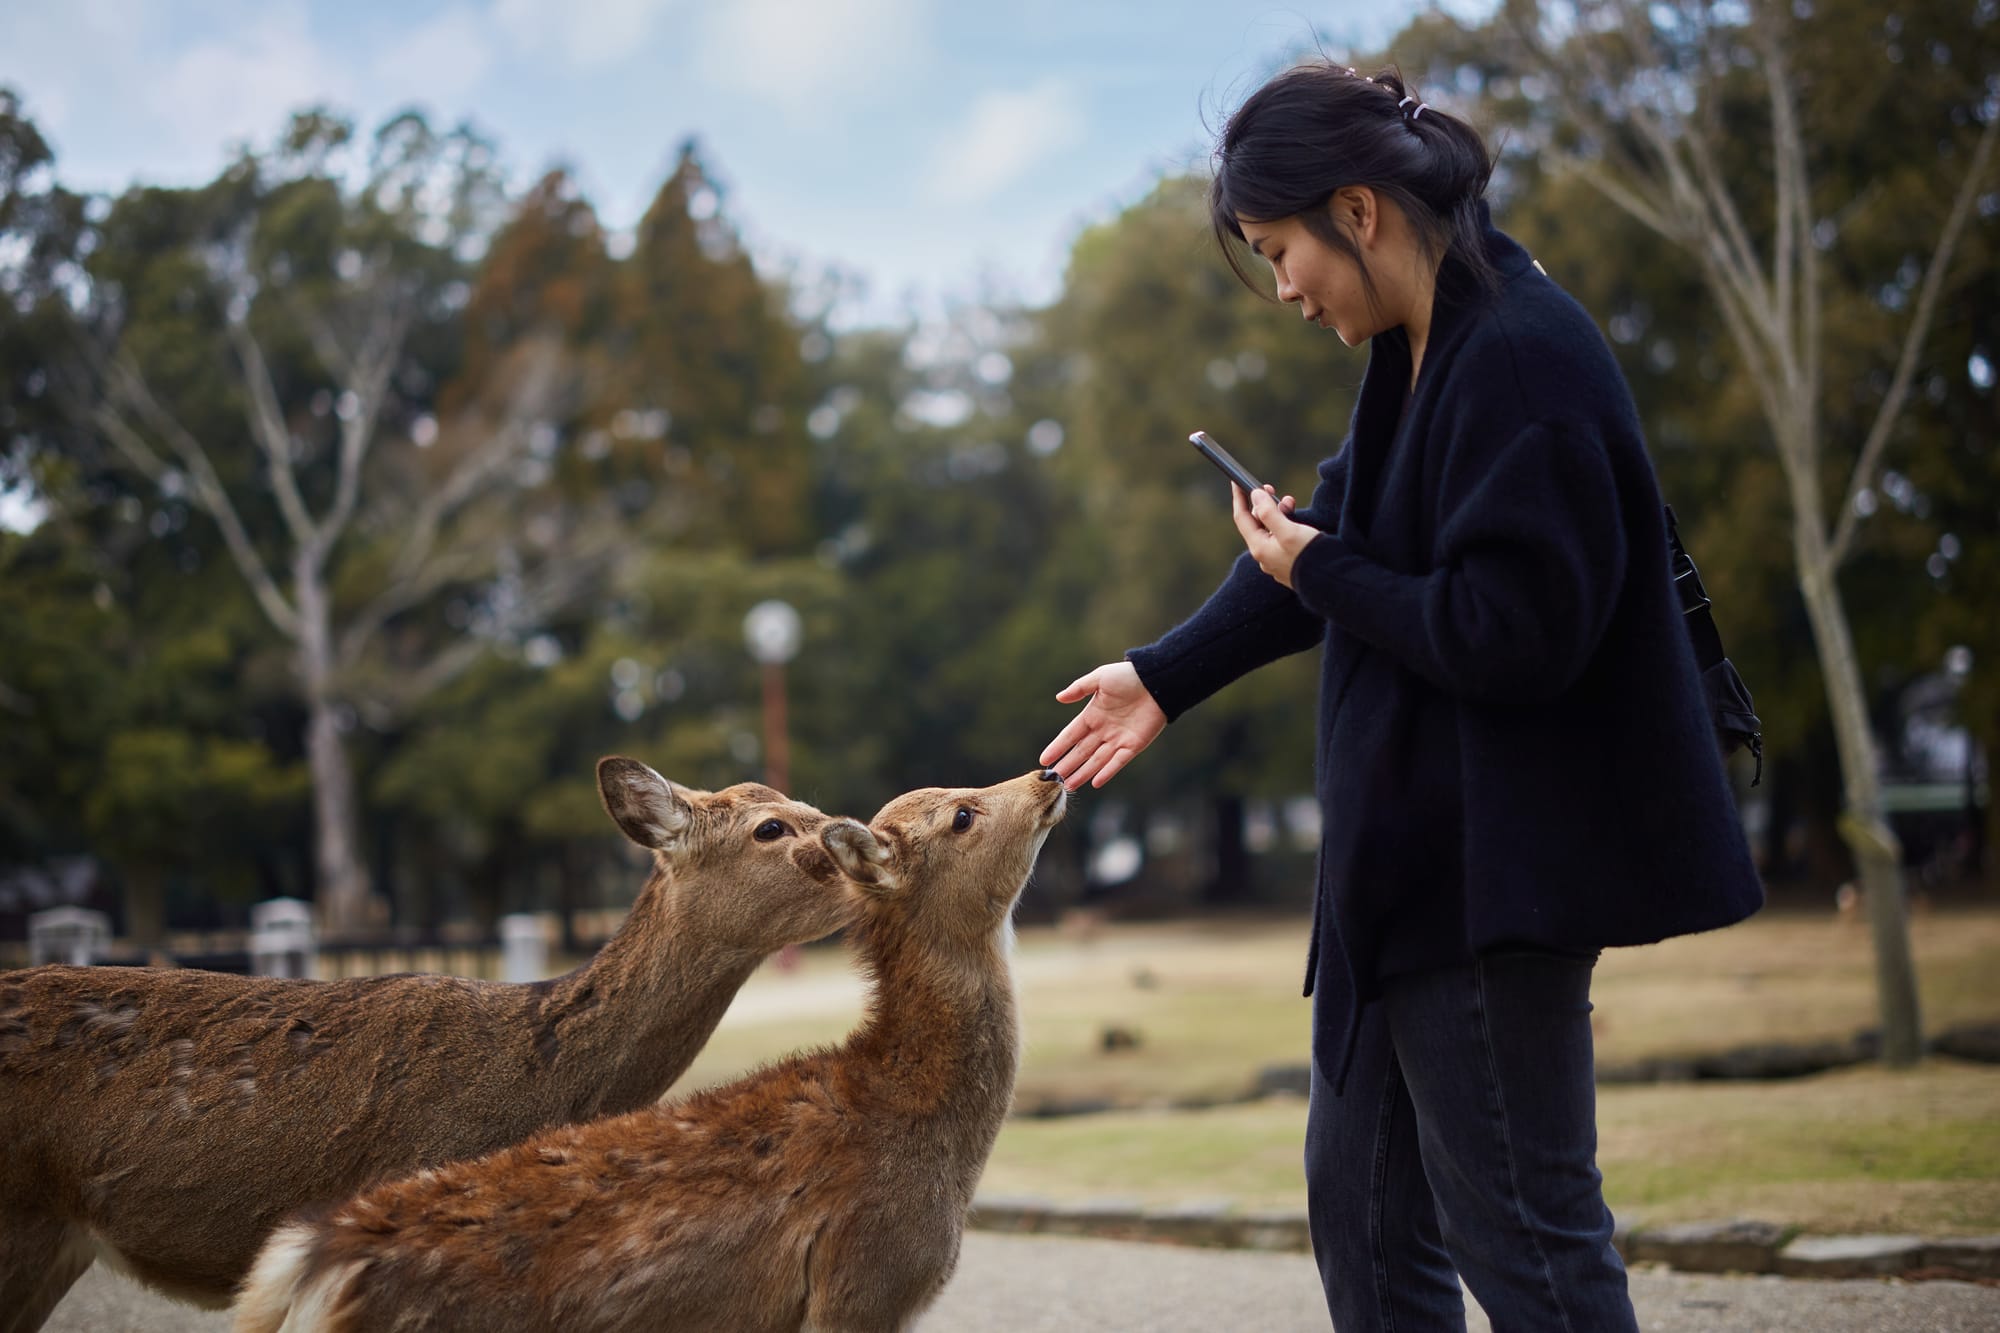 Visiting Uji & Nara, Japan - Travel Guide And Things To Do